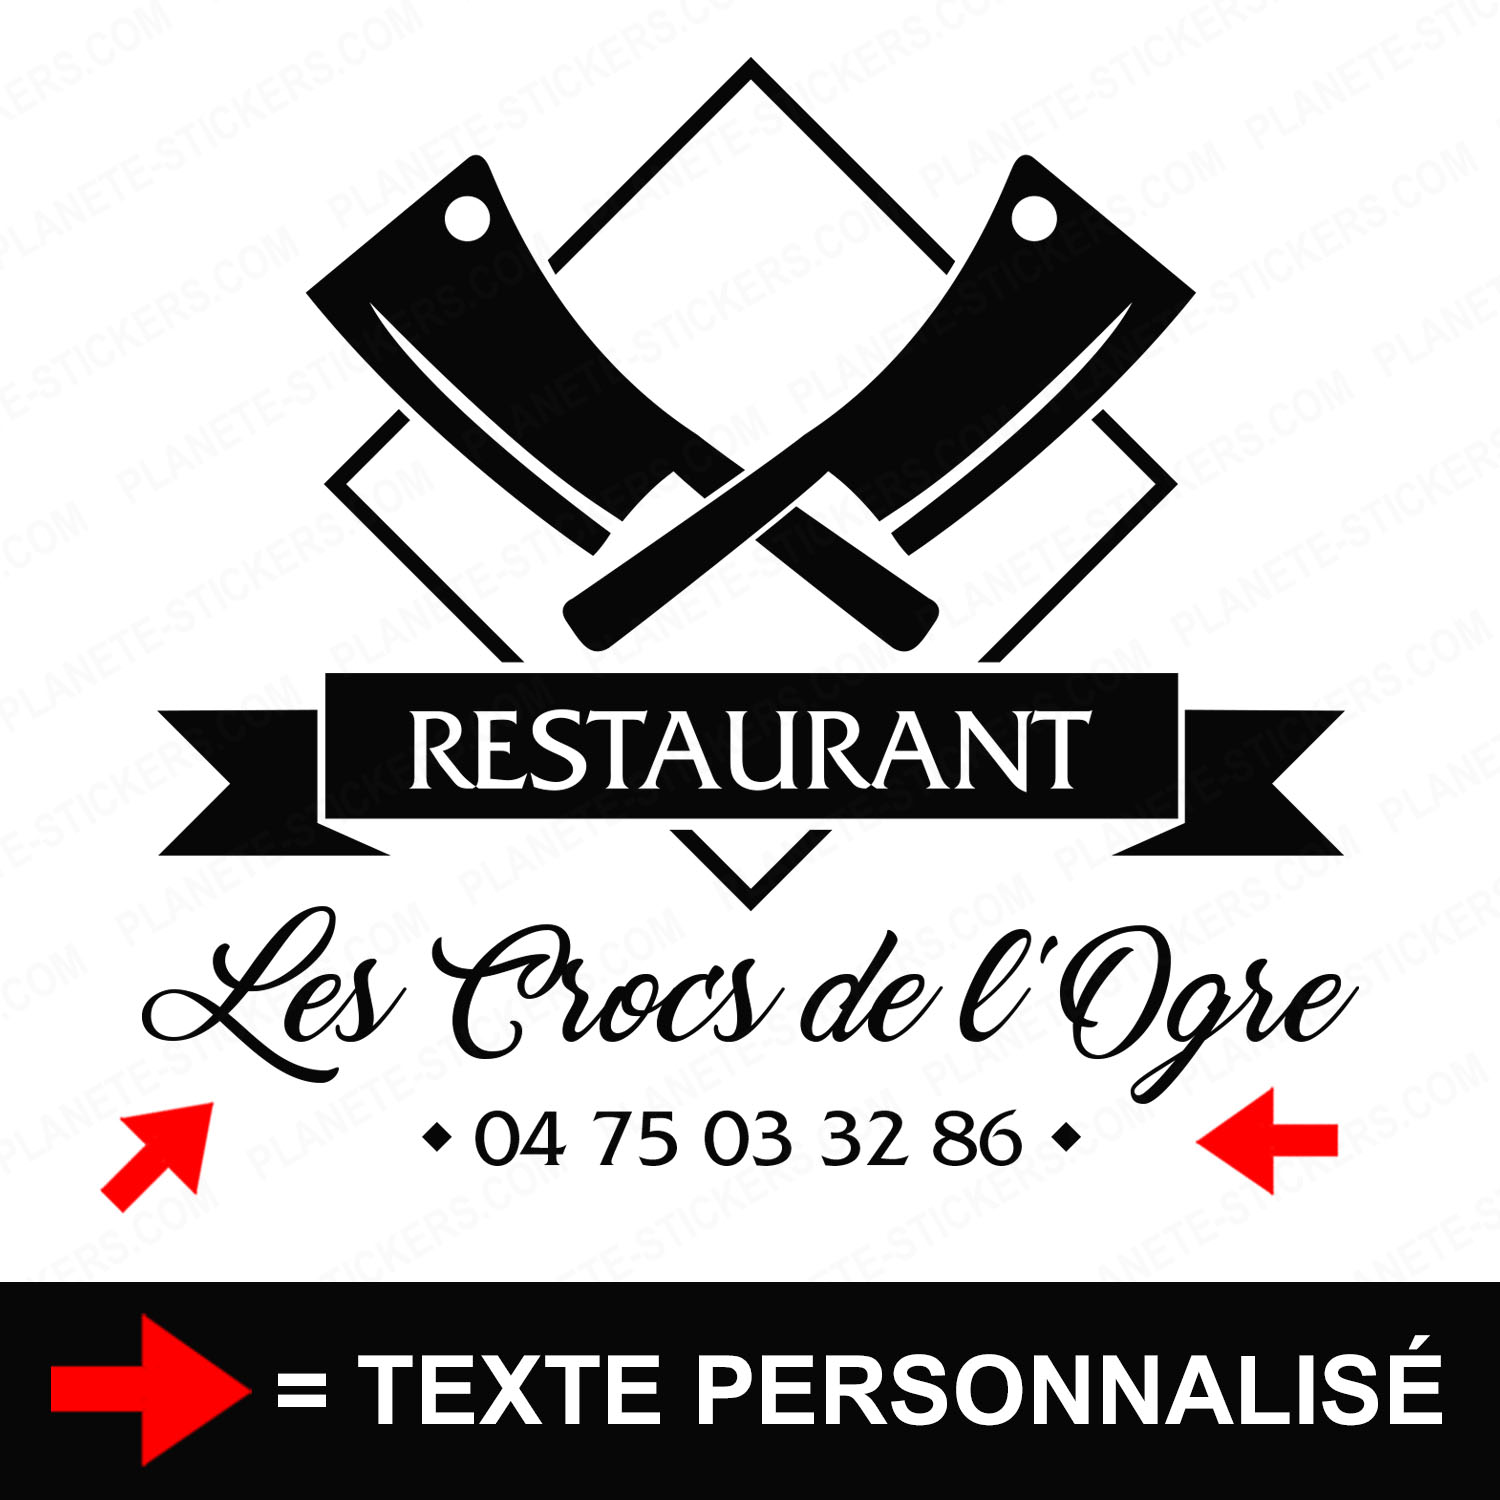 ref4restaurantvitrine-stickers-restaurant-vitrine-restaurant-sticker-personnalisé-autocollant-pro-restaurateur-vitre-resto-professionnel-logo-hachoirs-2